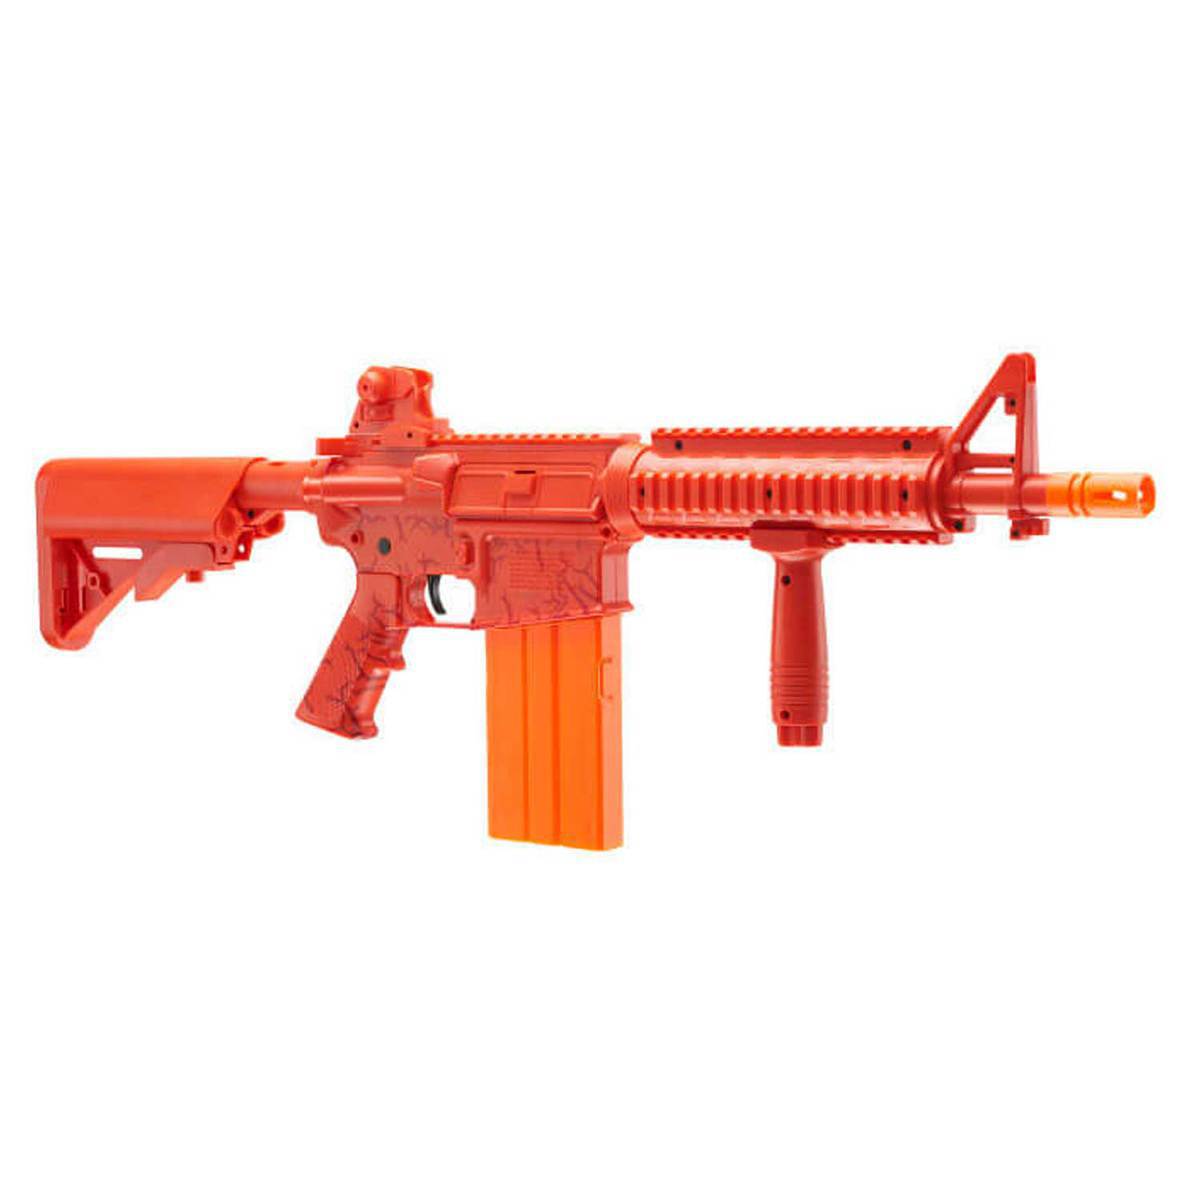 https://www.sportsmans.com/medias/umarex-rekt-opfour-co2-foam-dart-rifle-airgun-red-1650028-1.jpg?context=bWFzdGVyfGltYWdlc3w0MzI5NXxpbWFnZS9qcGVnfGFXMWhaMlZ6TDJoaE1DOW9PVFF2T1RZME5UVTRPRFUwTlRVMk5pNXFjR2N8Y2FjNTM2ZTI4NGQ1NzgyNmQ3MzM3MjZhZDJkYzM3OGZkNTdlYzllMWRhOGZiY2QzN2Q5YjAzMzM4ZWI4ZDVhOA